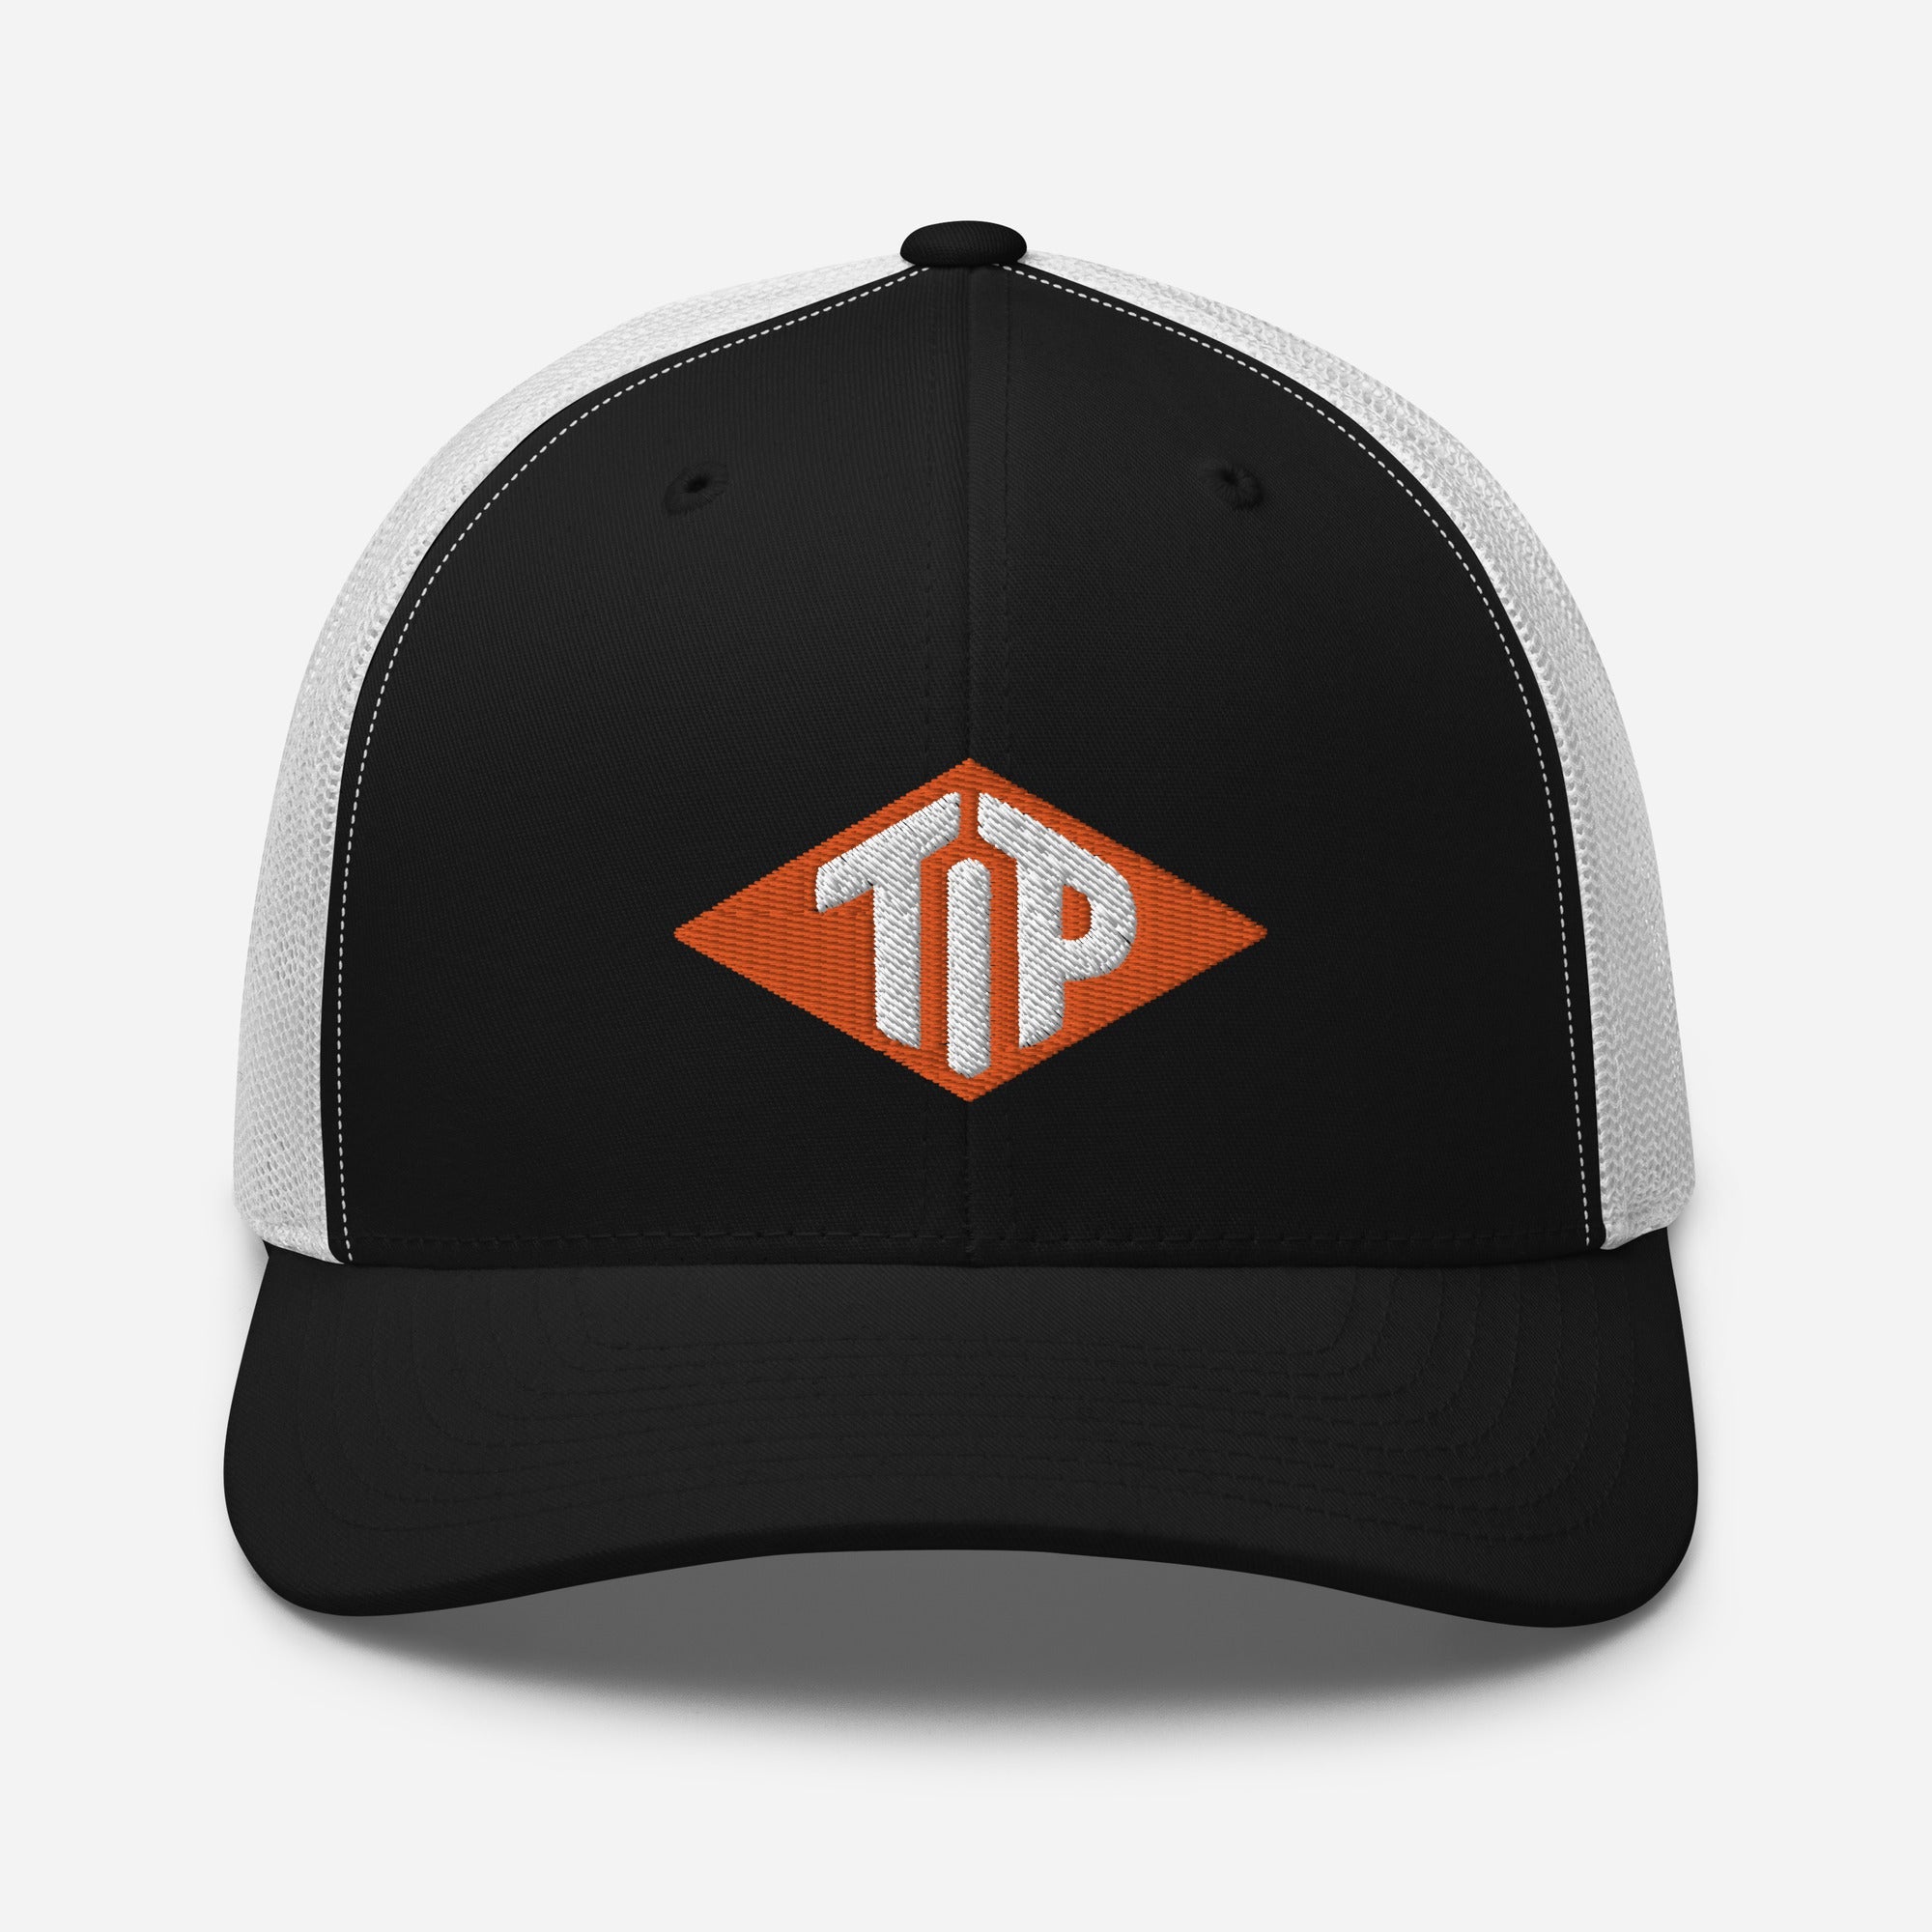 TIP Trucker Cap